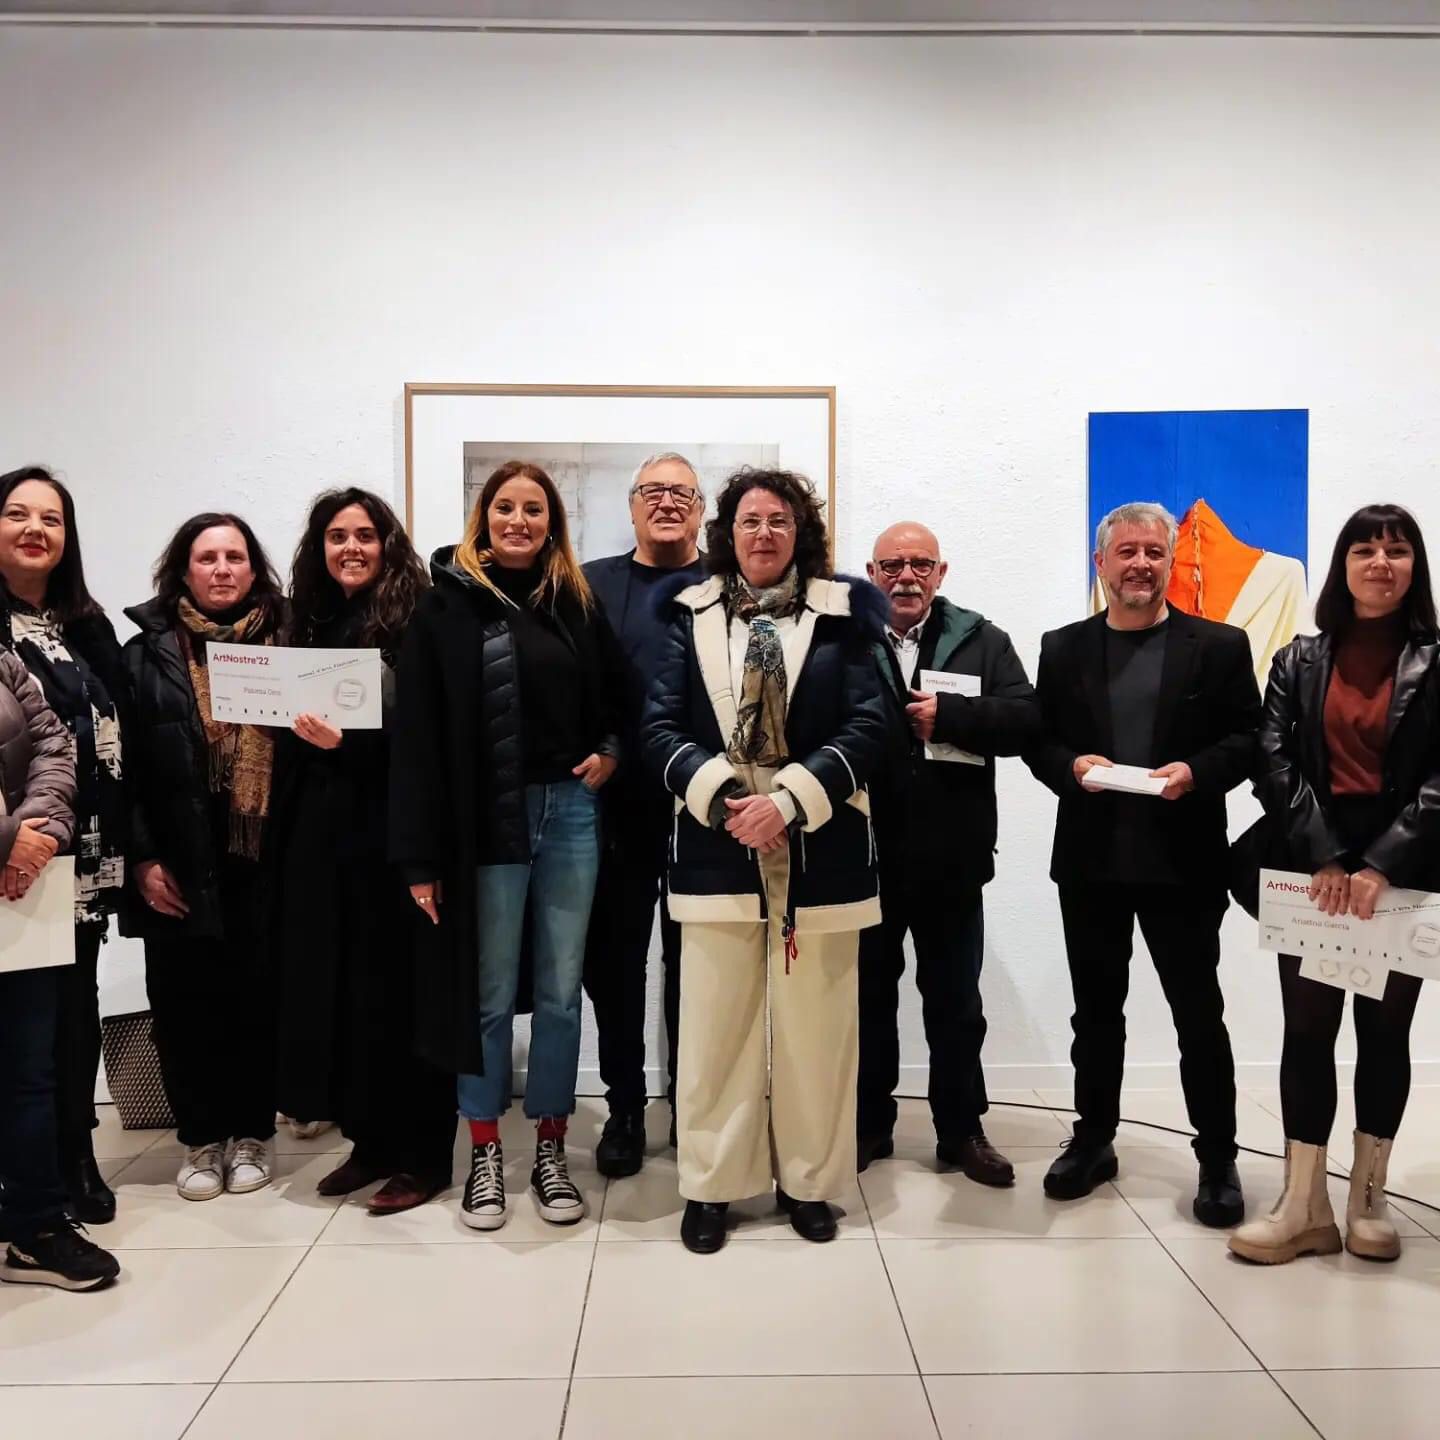 La artista villenense Ana Esteban gana el premio de la VII Edición de la Bienal ArtNostre con la obra “Lycra”￼